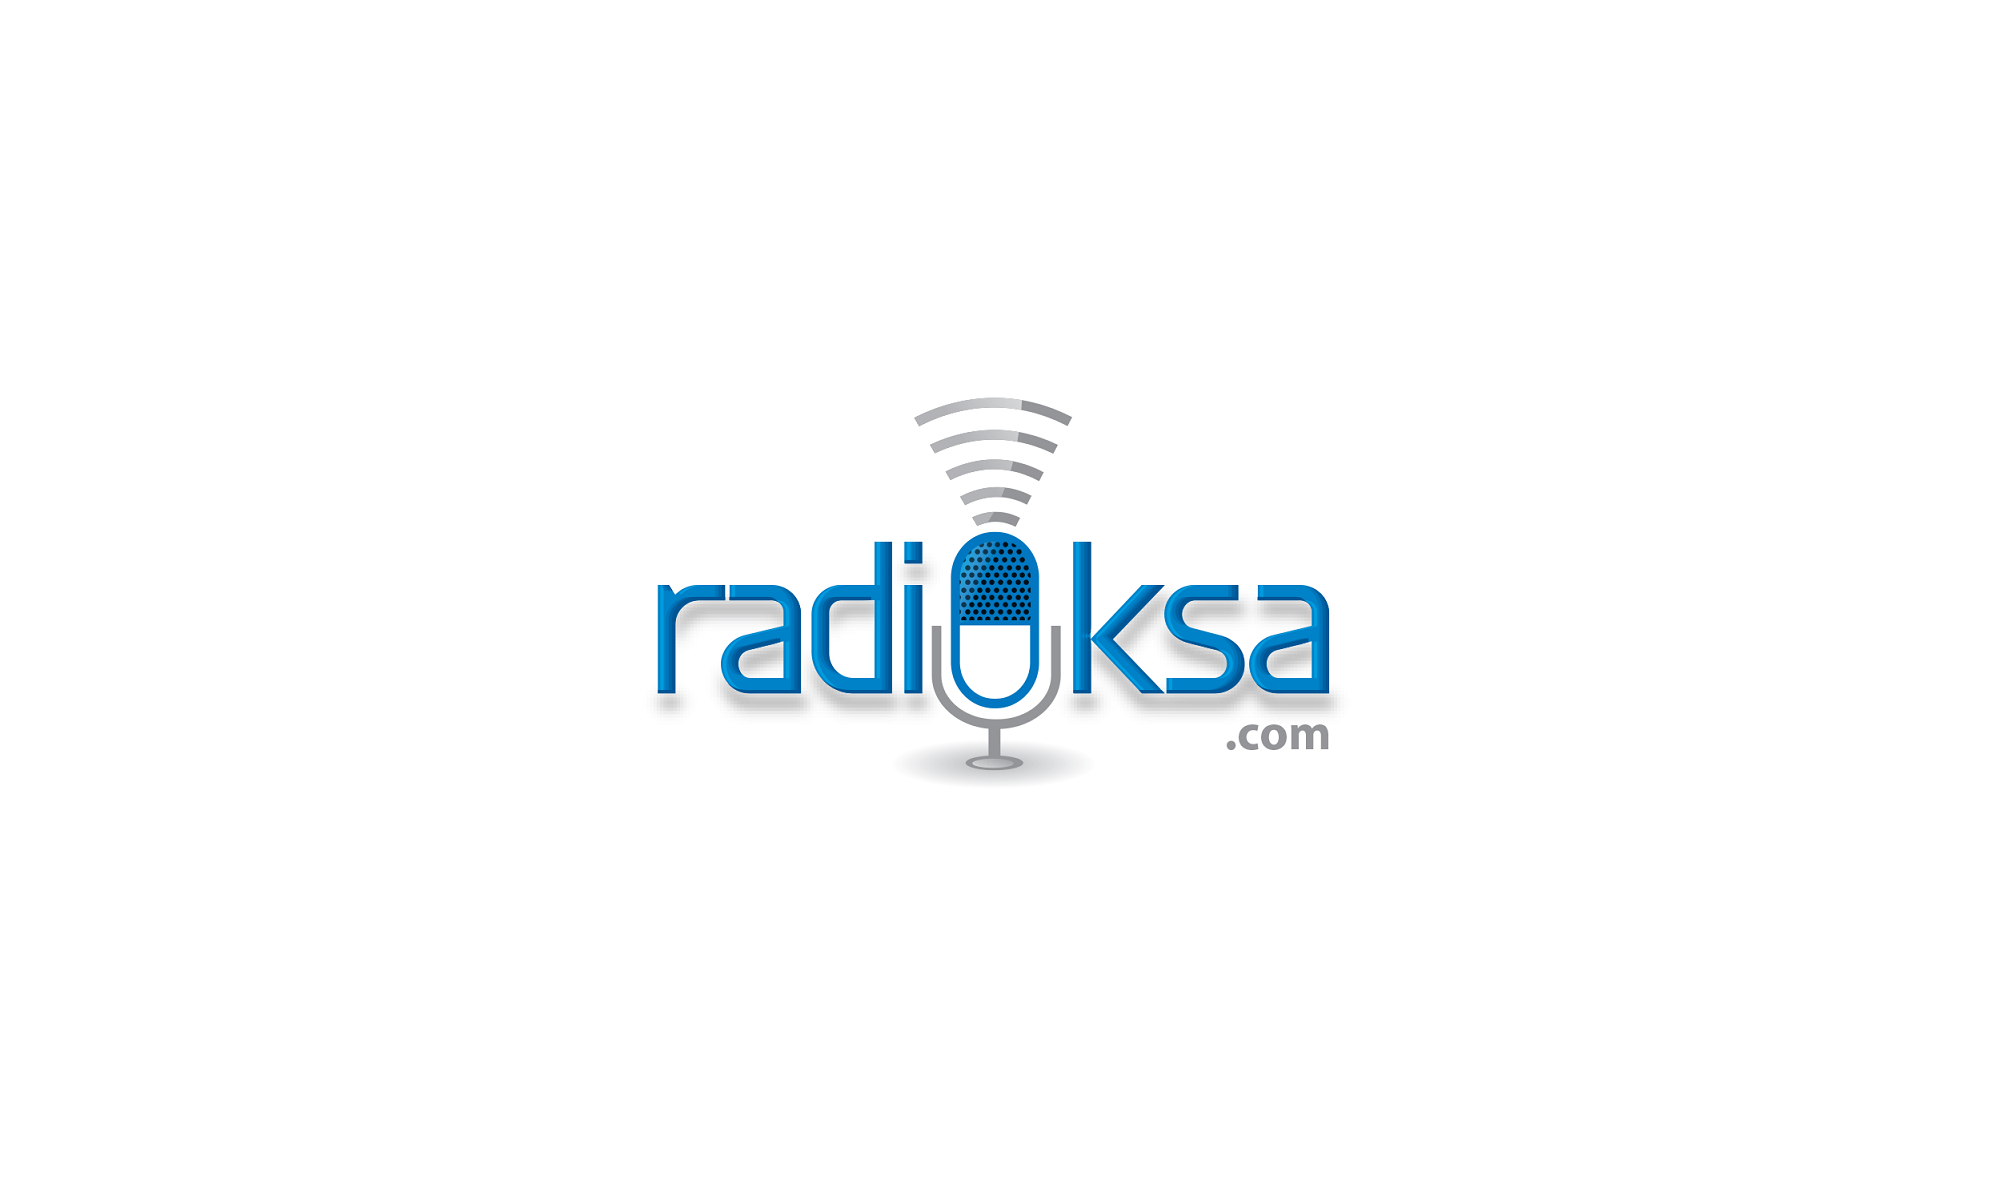 RadioKSA.com